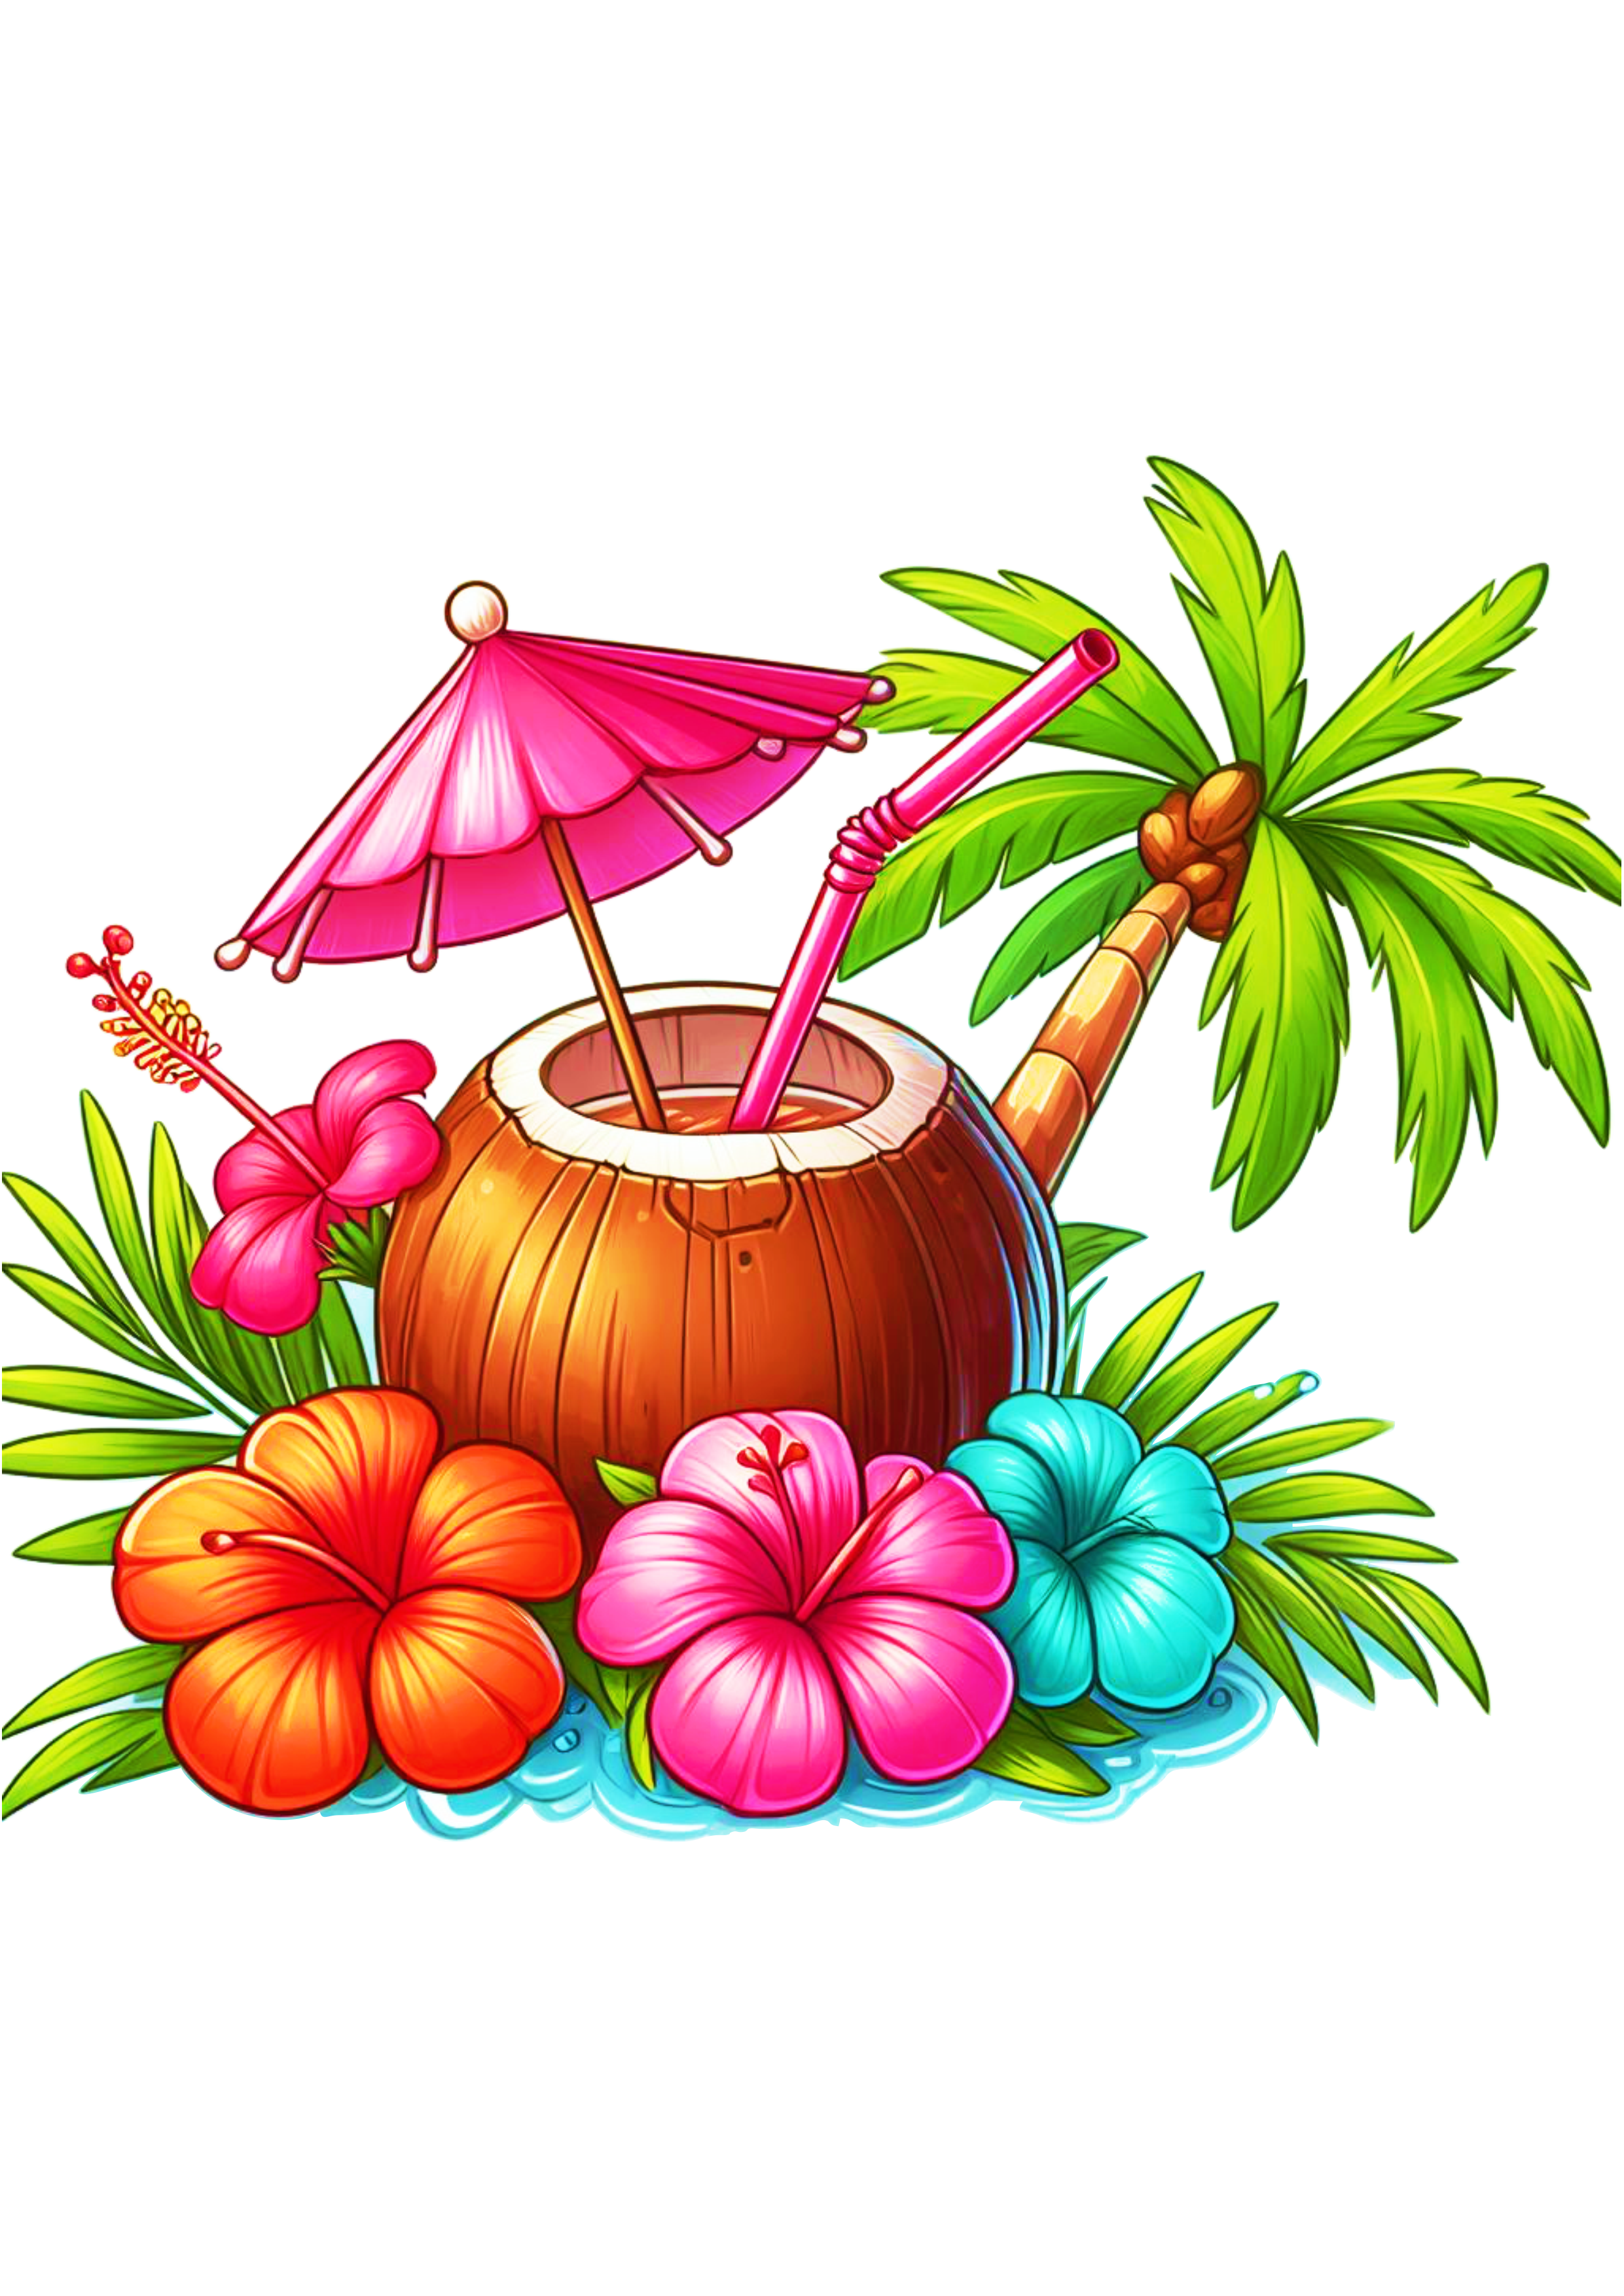 Tardezinha bebida tropical água de coco artes gráficas ilustração imagem fundo transparente drink png